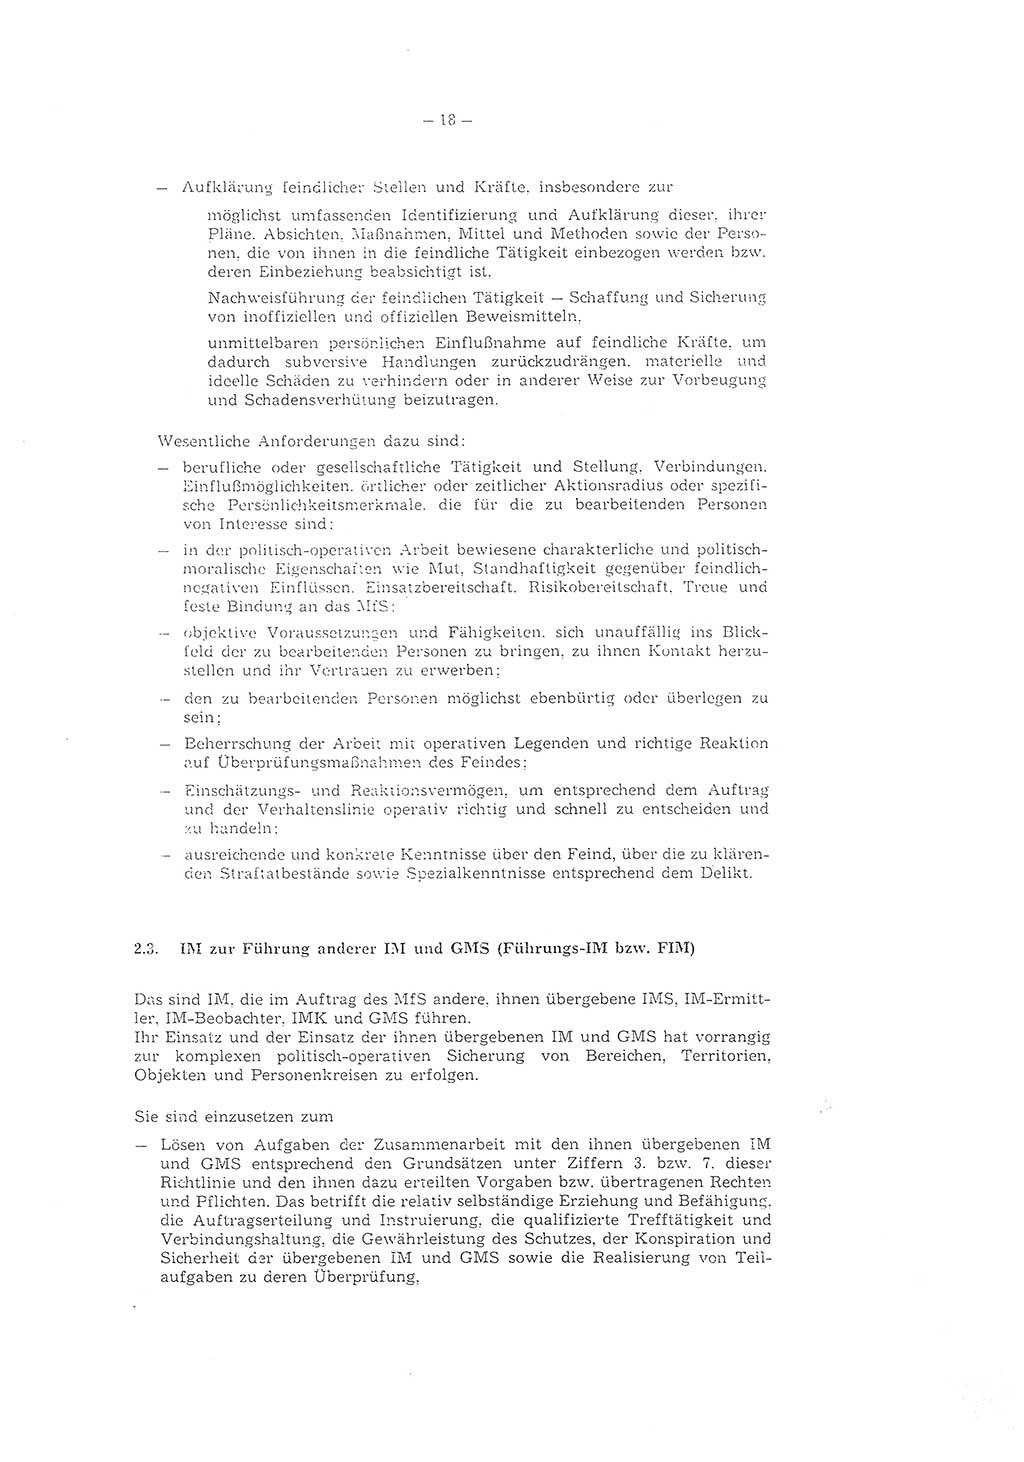 Richtlinie 1/79 für die Arbeit mit Inoffiziellen Mitarbeitern (IM) und Gesellschaftlichen Mitarbeitern für Sicherheit (GMS), Deutsche Demokratische Republik (DDR), Ministerium für Staatssicherheit (MfS), Der Minister (Mielke), Geheime Verschlußsache (GVS) ooo8-1/79, Berlin 1979, Seite 18 (RL 1/79 DDR MfS Min. GVS ooo8-1/79 1979, S. 18)